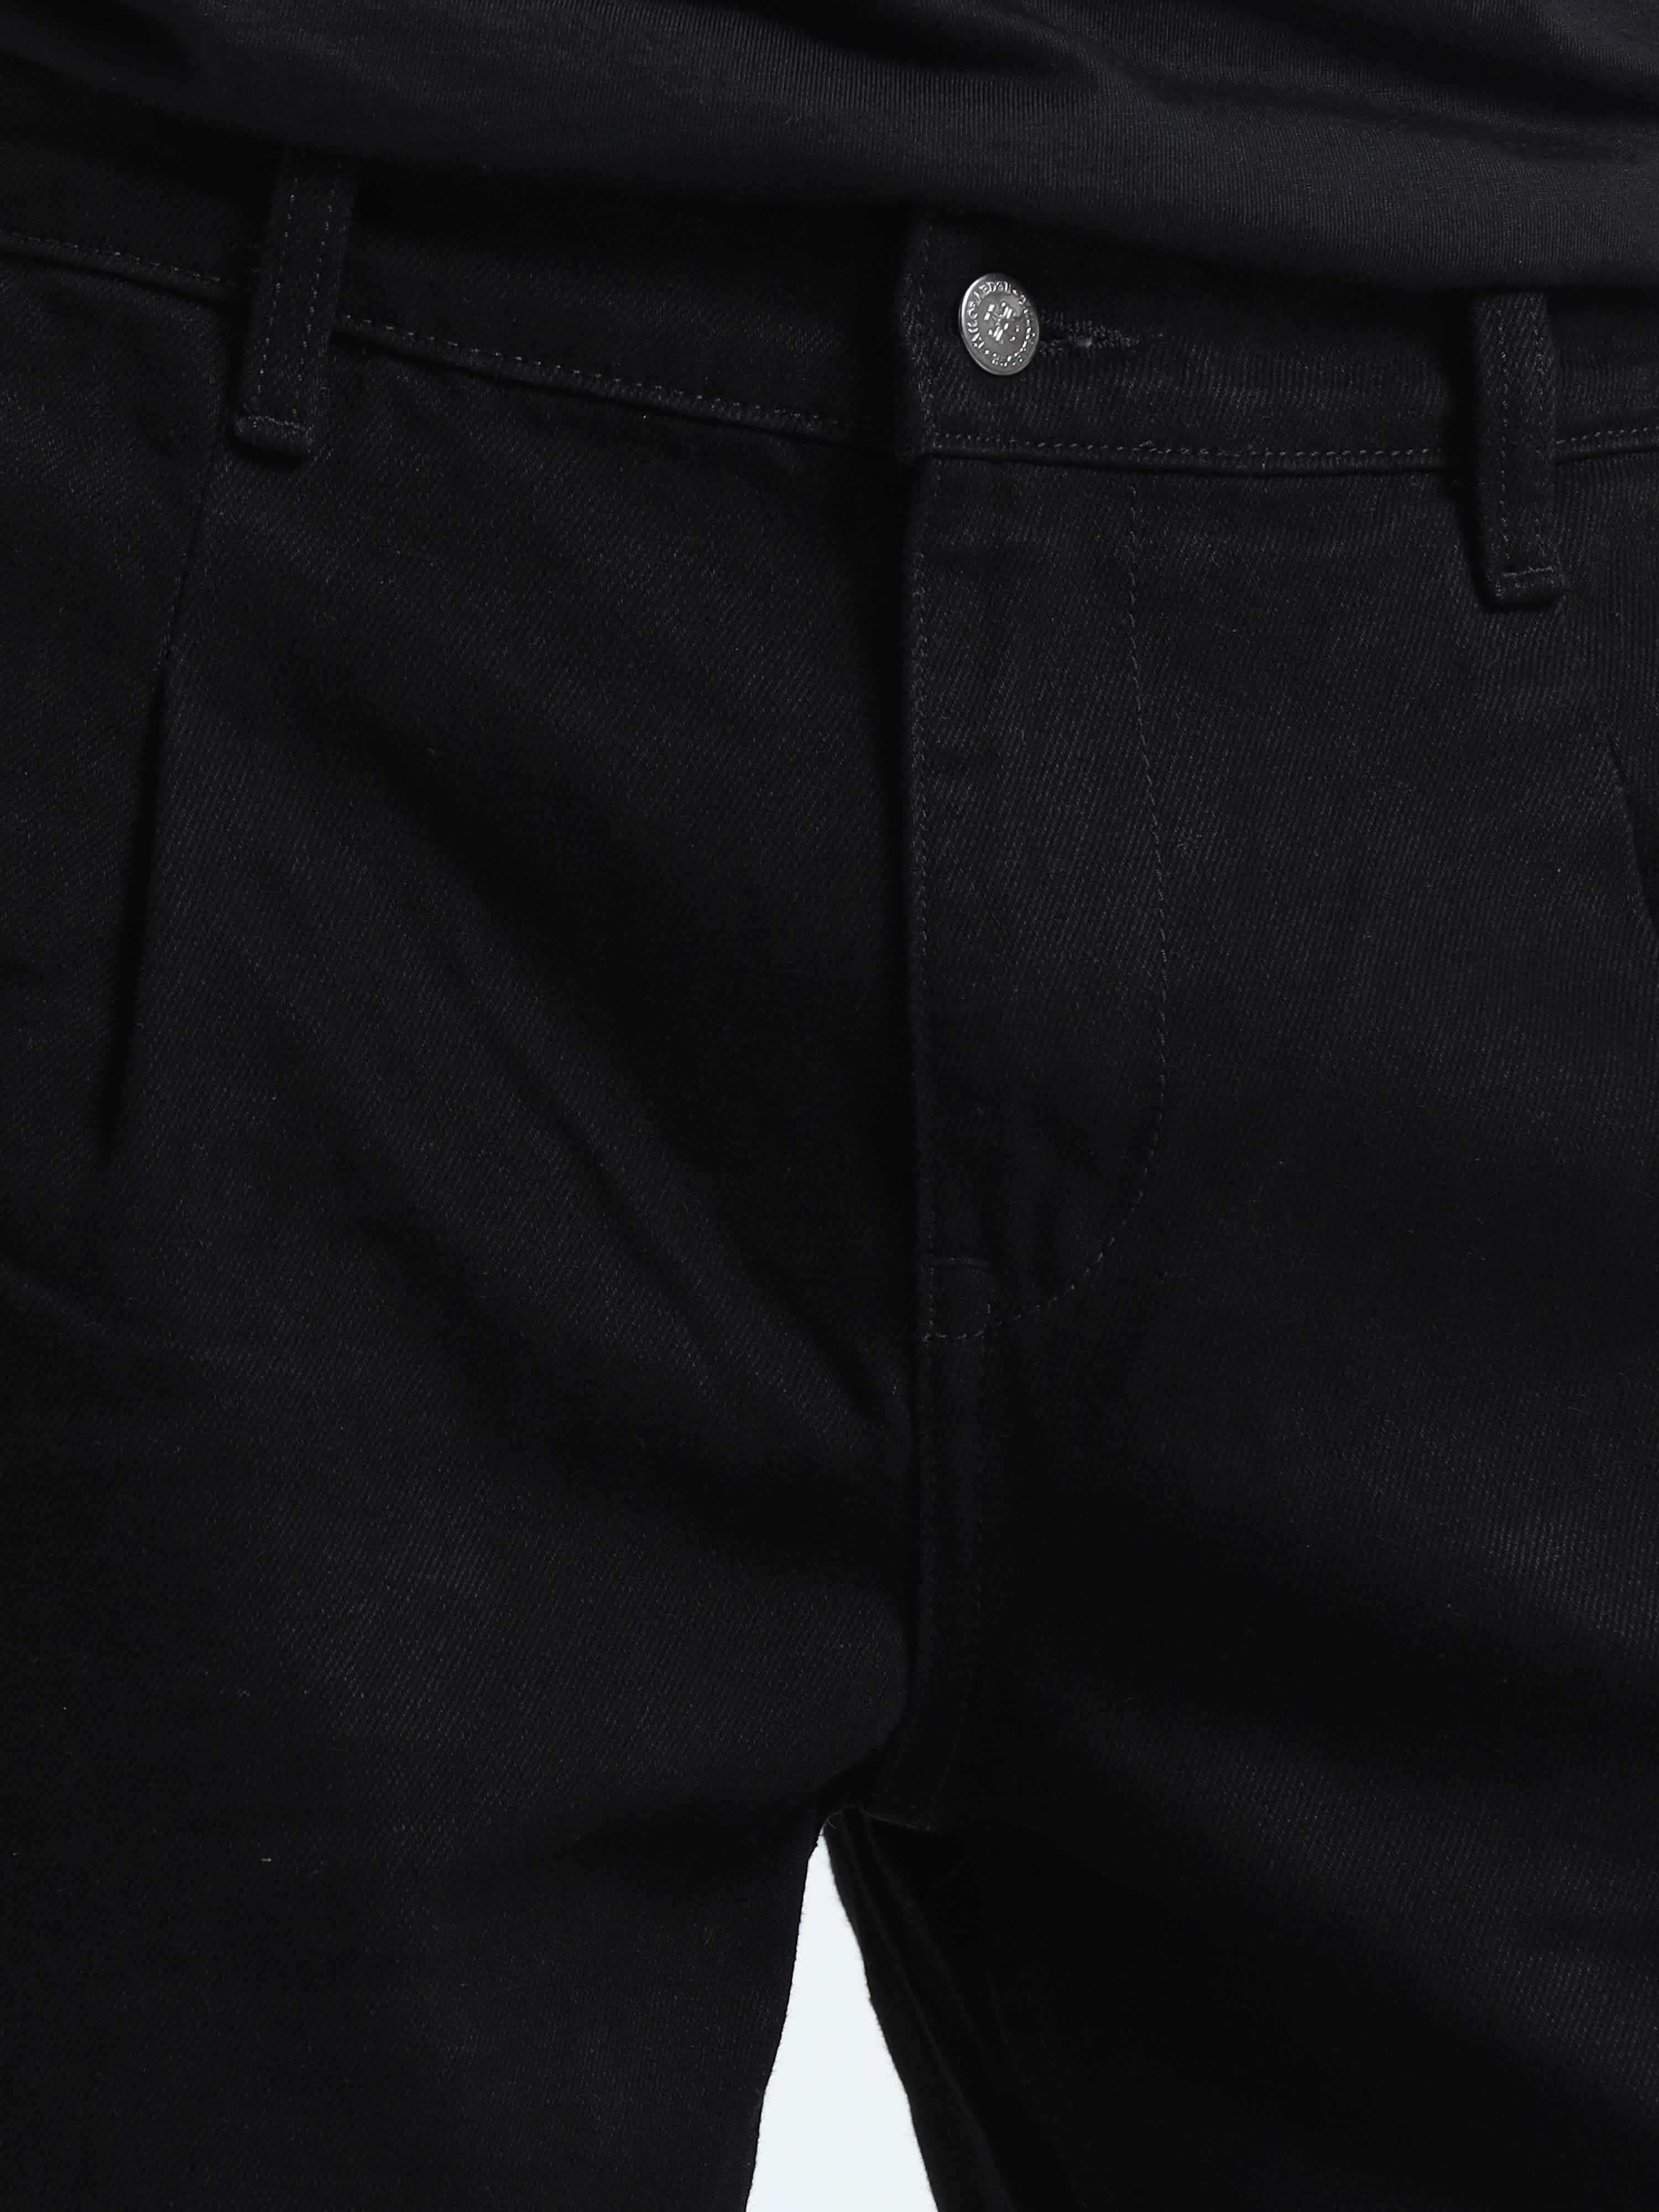 Buy Latest Duca Relaxed Black Denim Jeans Mens Online